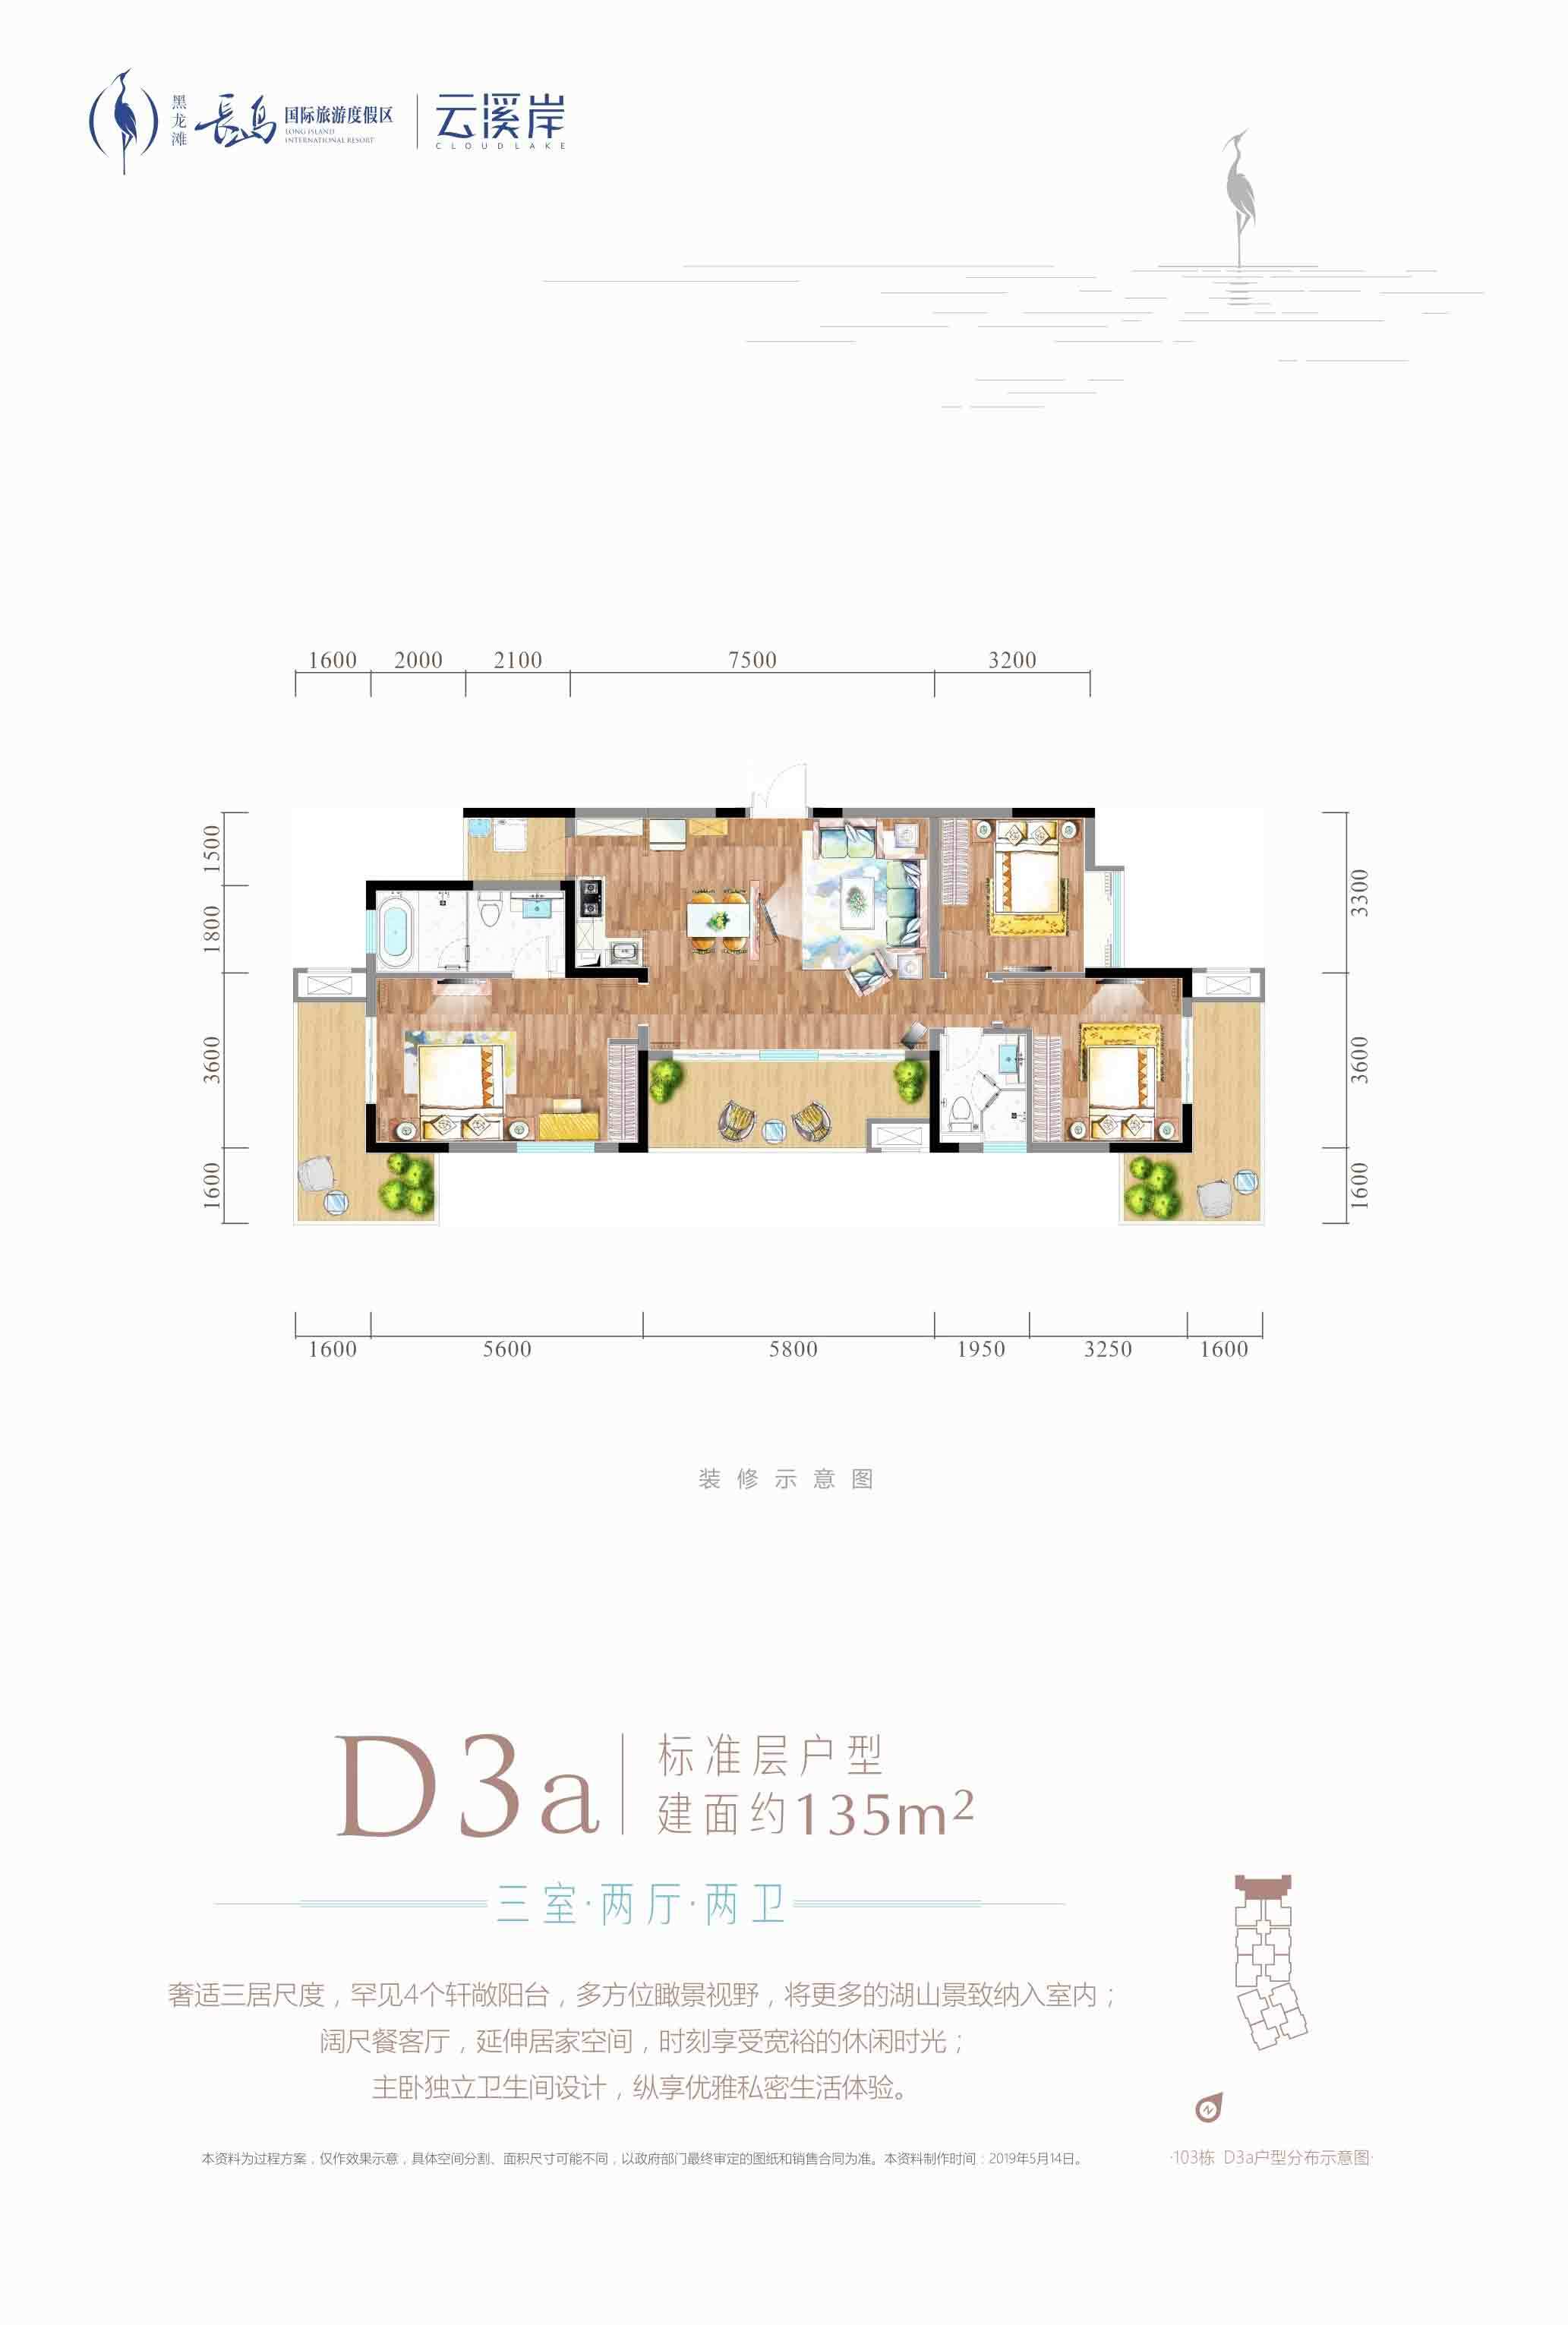 D3a-三室两厅两卫-135㎡